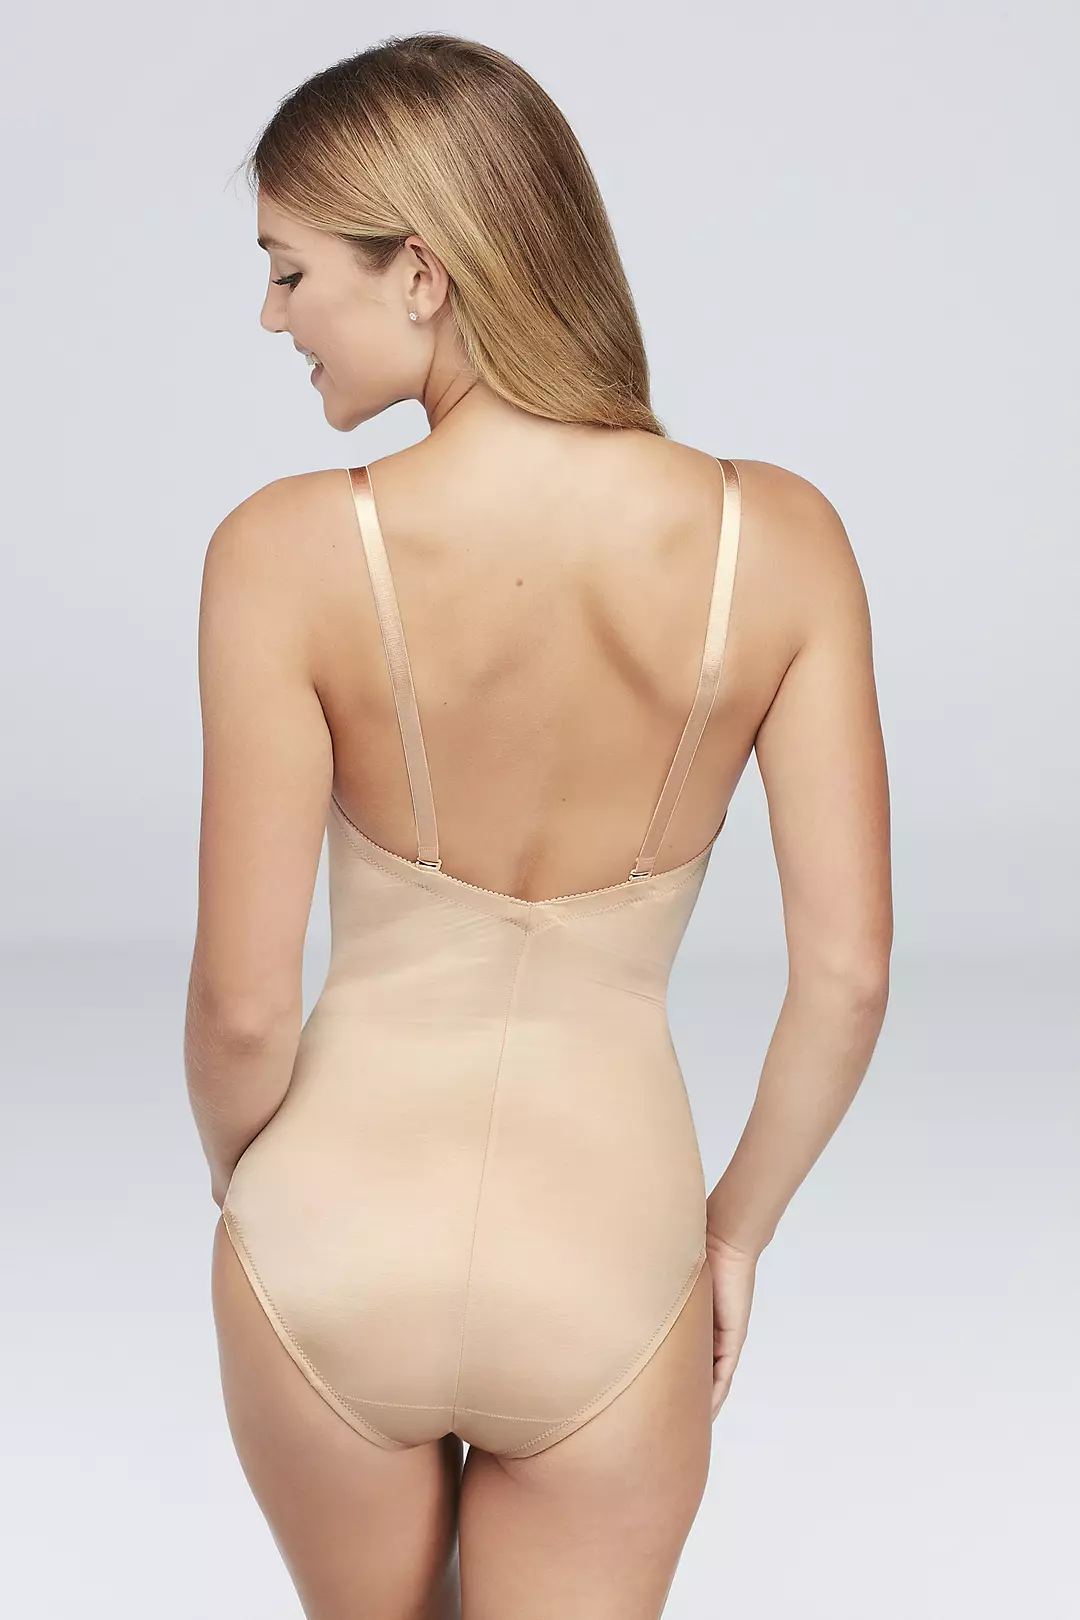 KLONKEE Women's Backless Body Shaper Deep V Neck Plunge Back